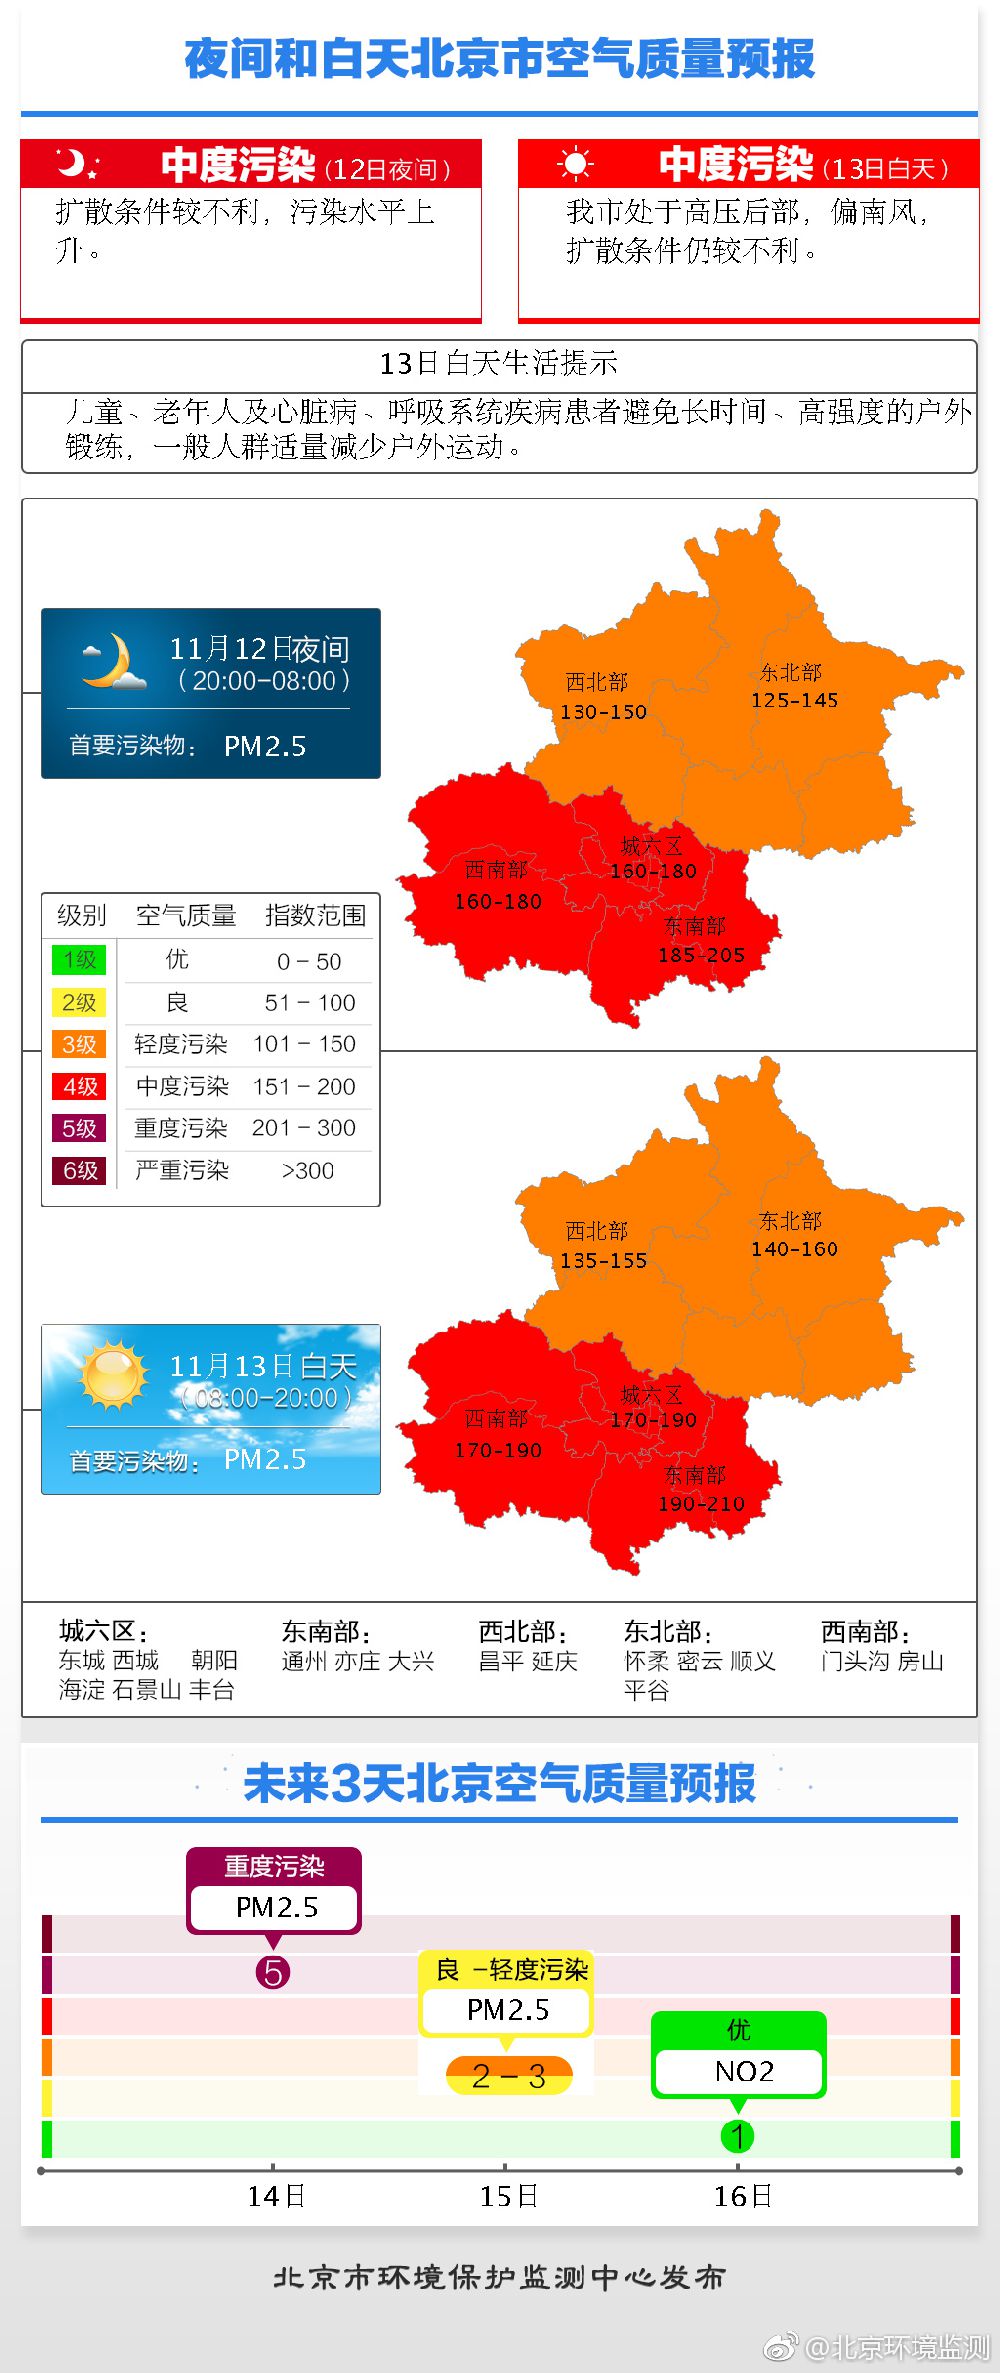 11月13日北京雾霾指数及未来三天天气预报